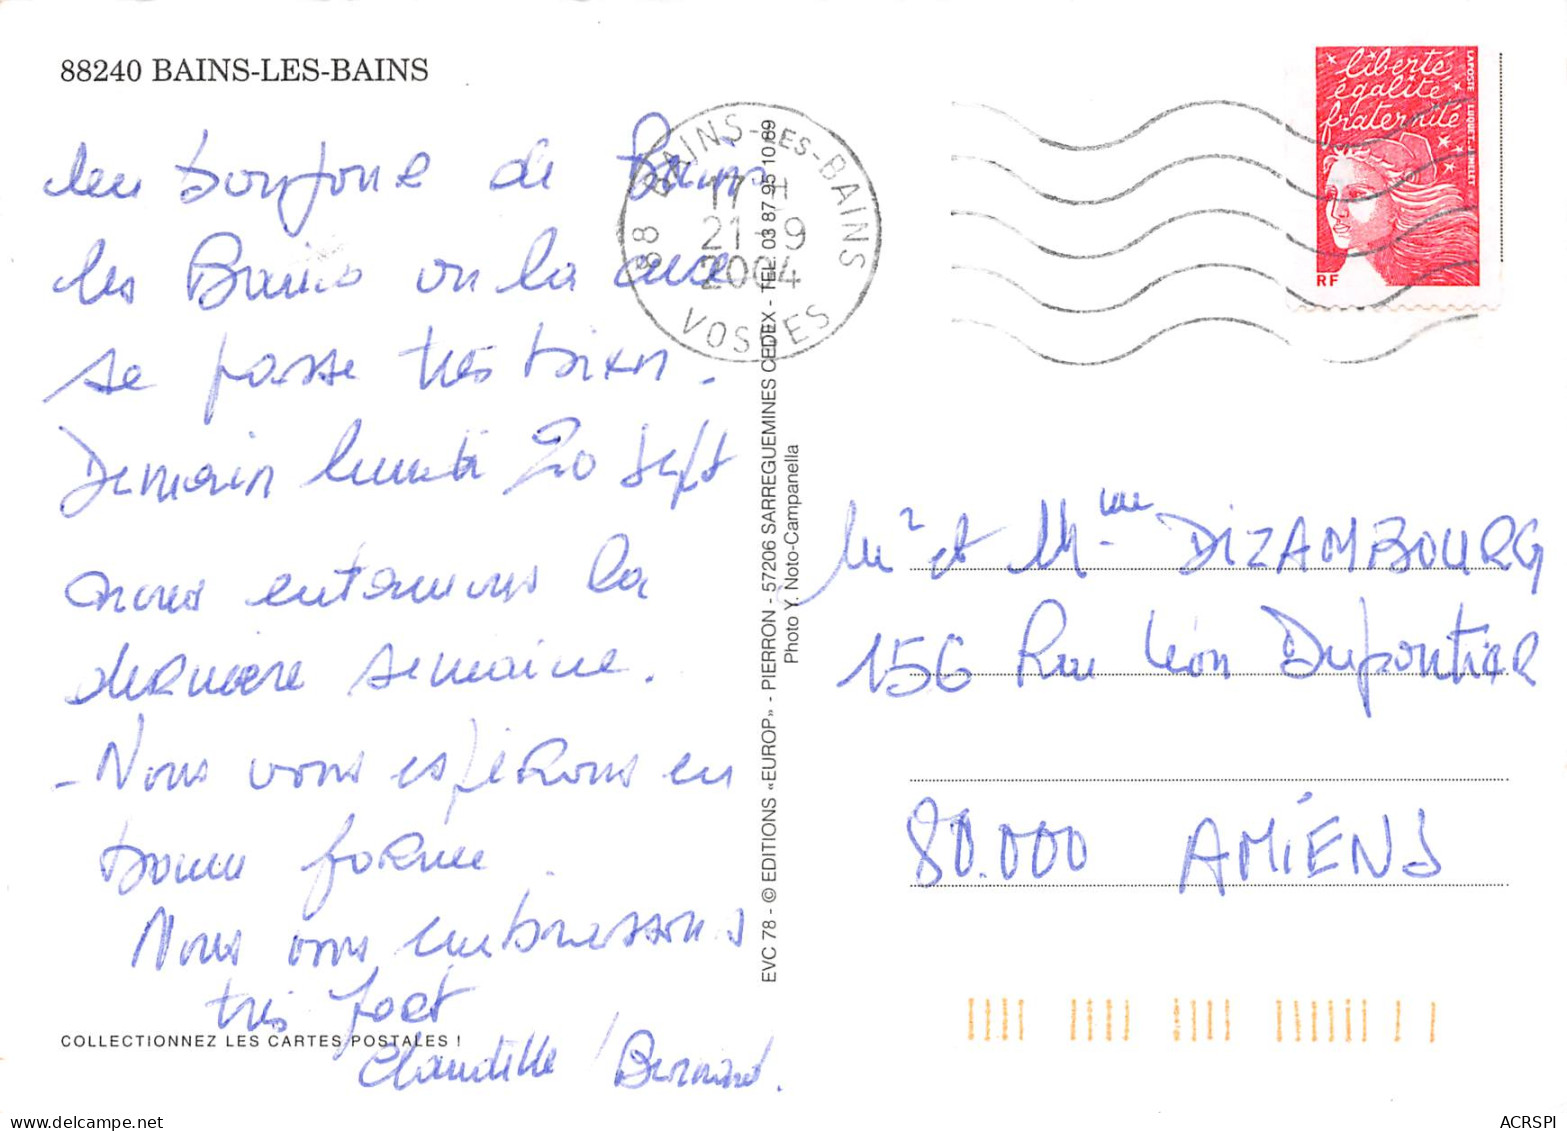 88  BAINS LES BAINS Le Parc Saint Colomban Et Divers Vues   54 (scan Recto Verso)MF2771TER - Bains Les Bains